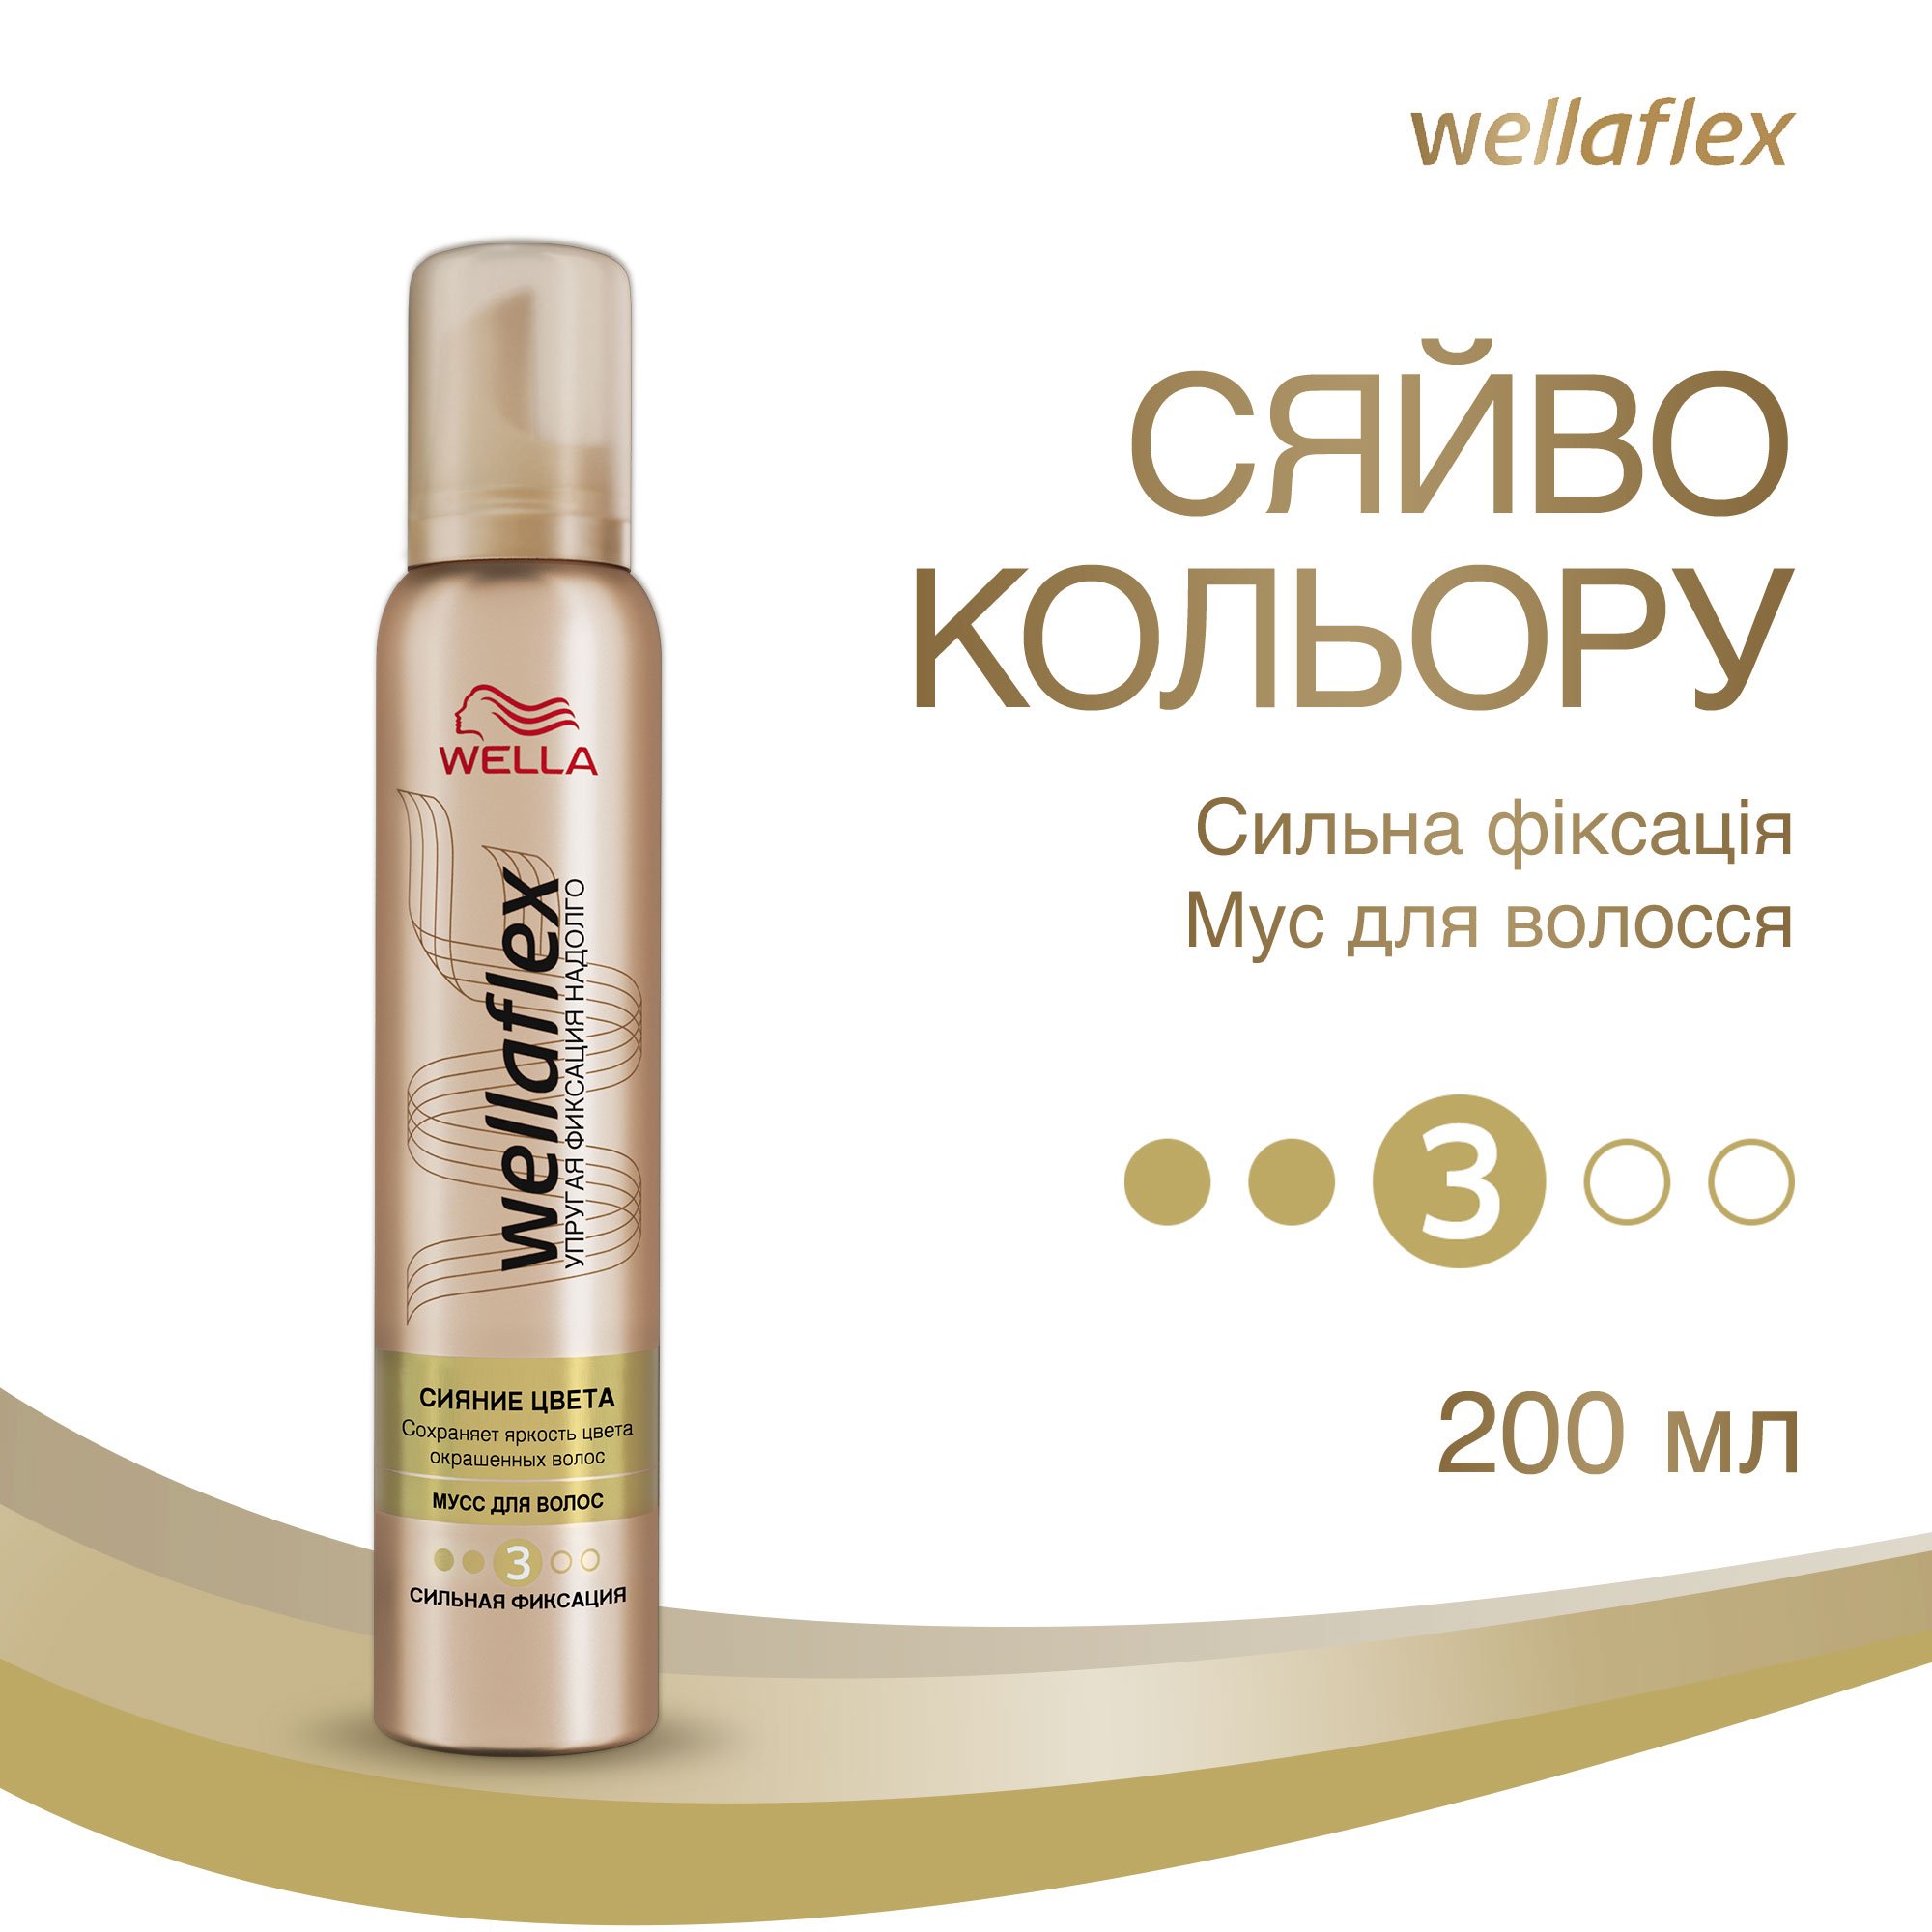 Мус для волосся Wellaflex Сяйво Кольору для Сильної фіксації 200 мл - фото 2